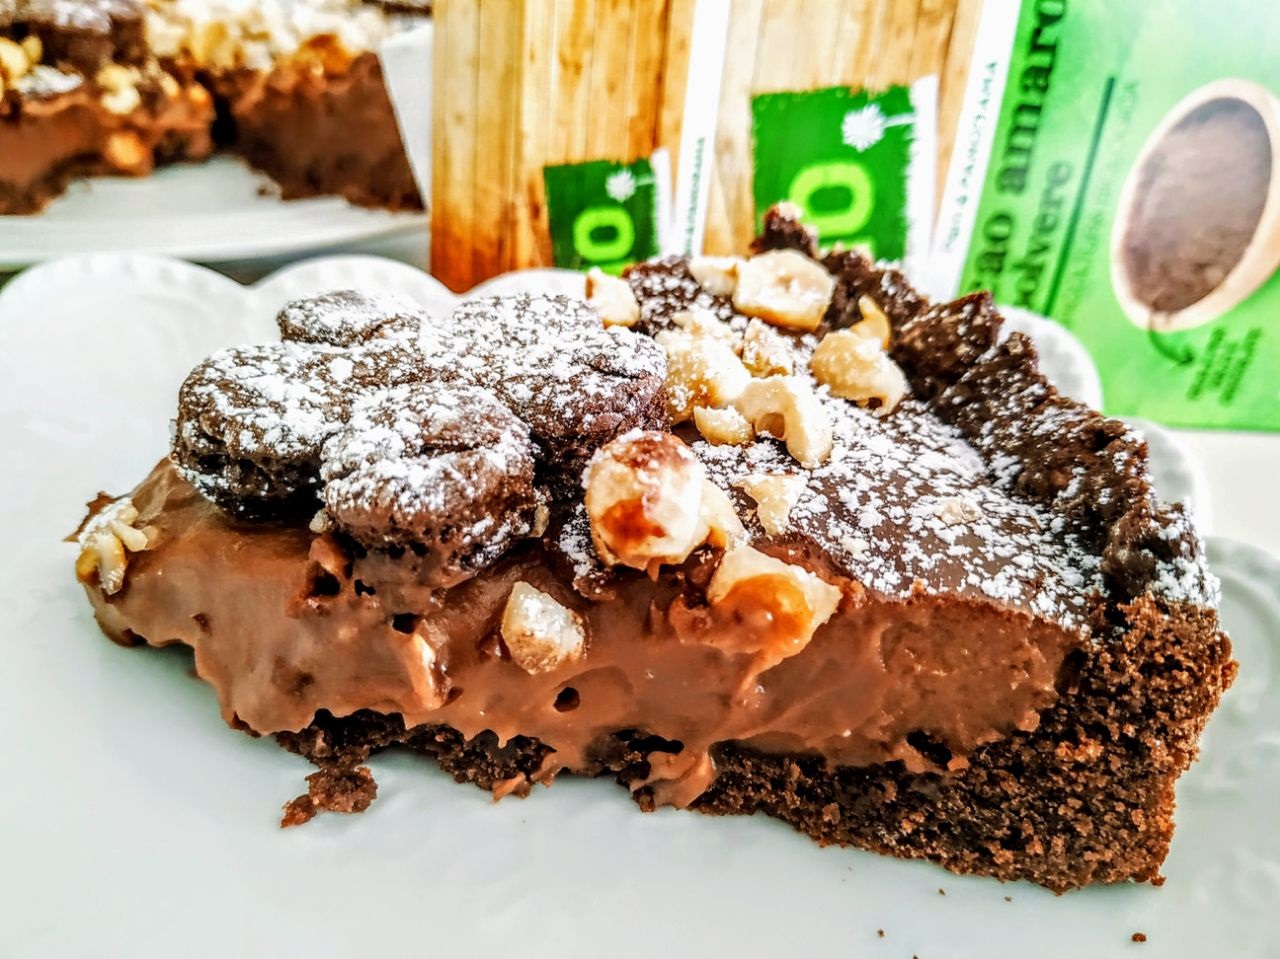 Dolci semplici senza burro: torta di pasta frolla al cacao amaro con crema pasticcera al cioccolato fondente e nocciole!